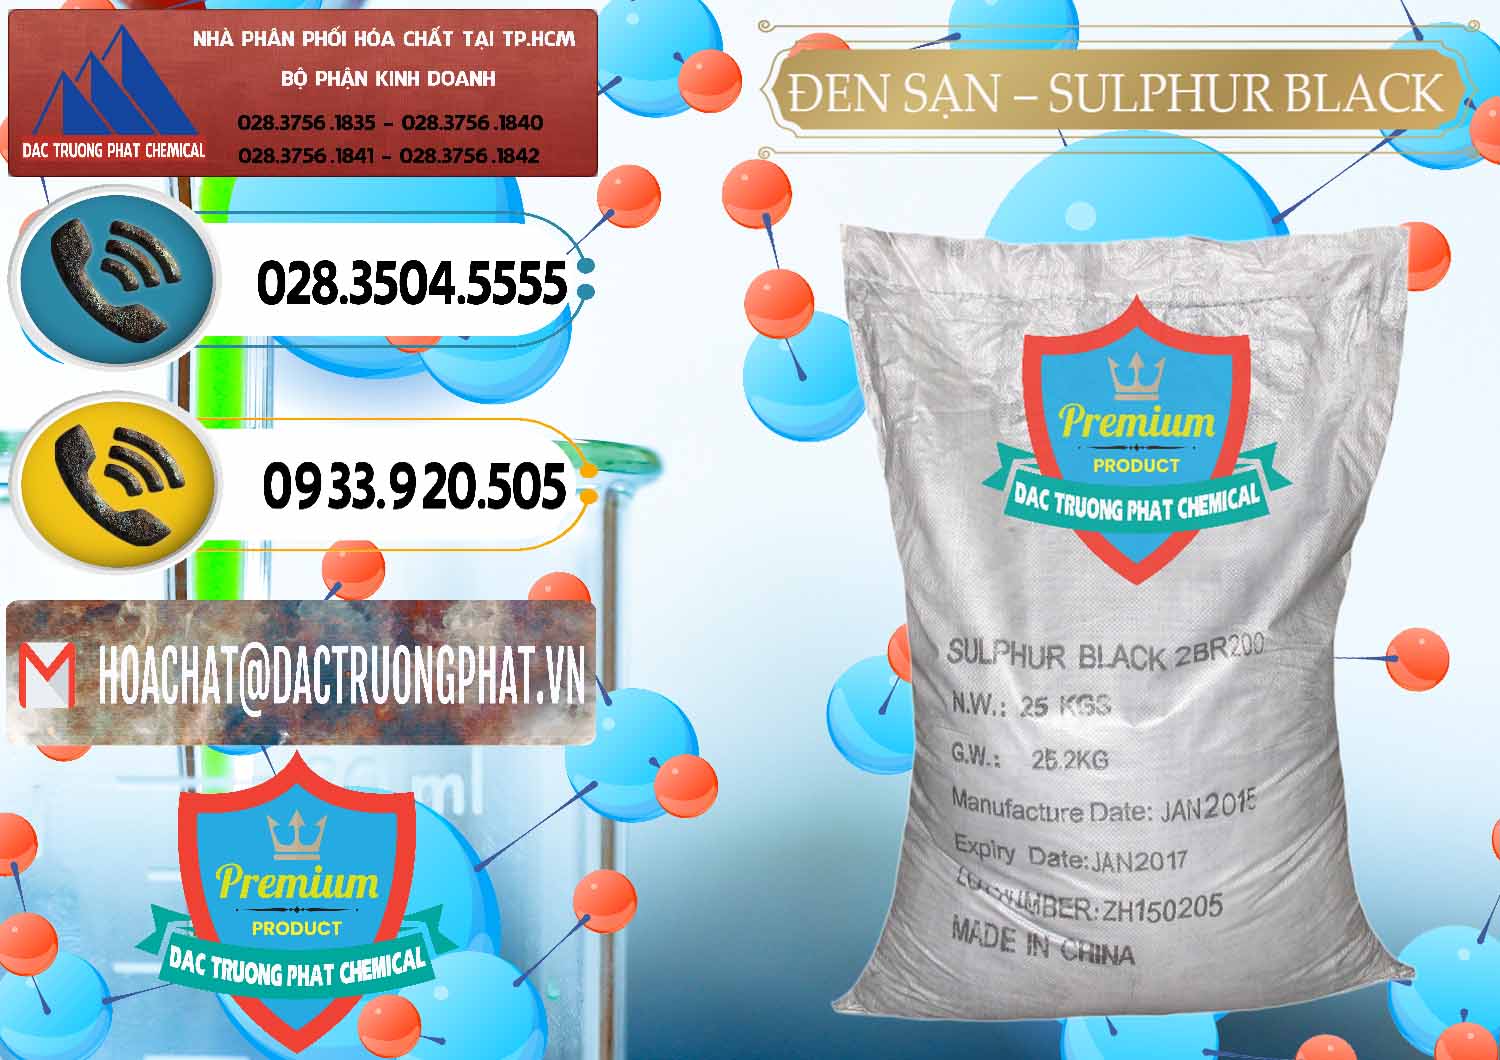 Đơn vị chuyên kinh doanh _ bán Đen Sạn – Sulphur Black Trung Quốc China - 0062 - Nơi phân phối và kinh doanh hóa chất tại TP.HCM - hoachatdetnhuom.vn